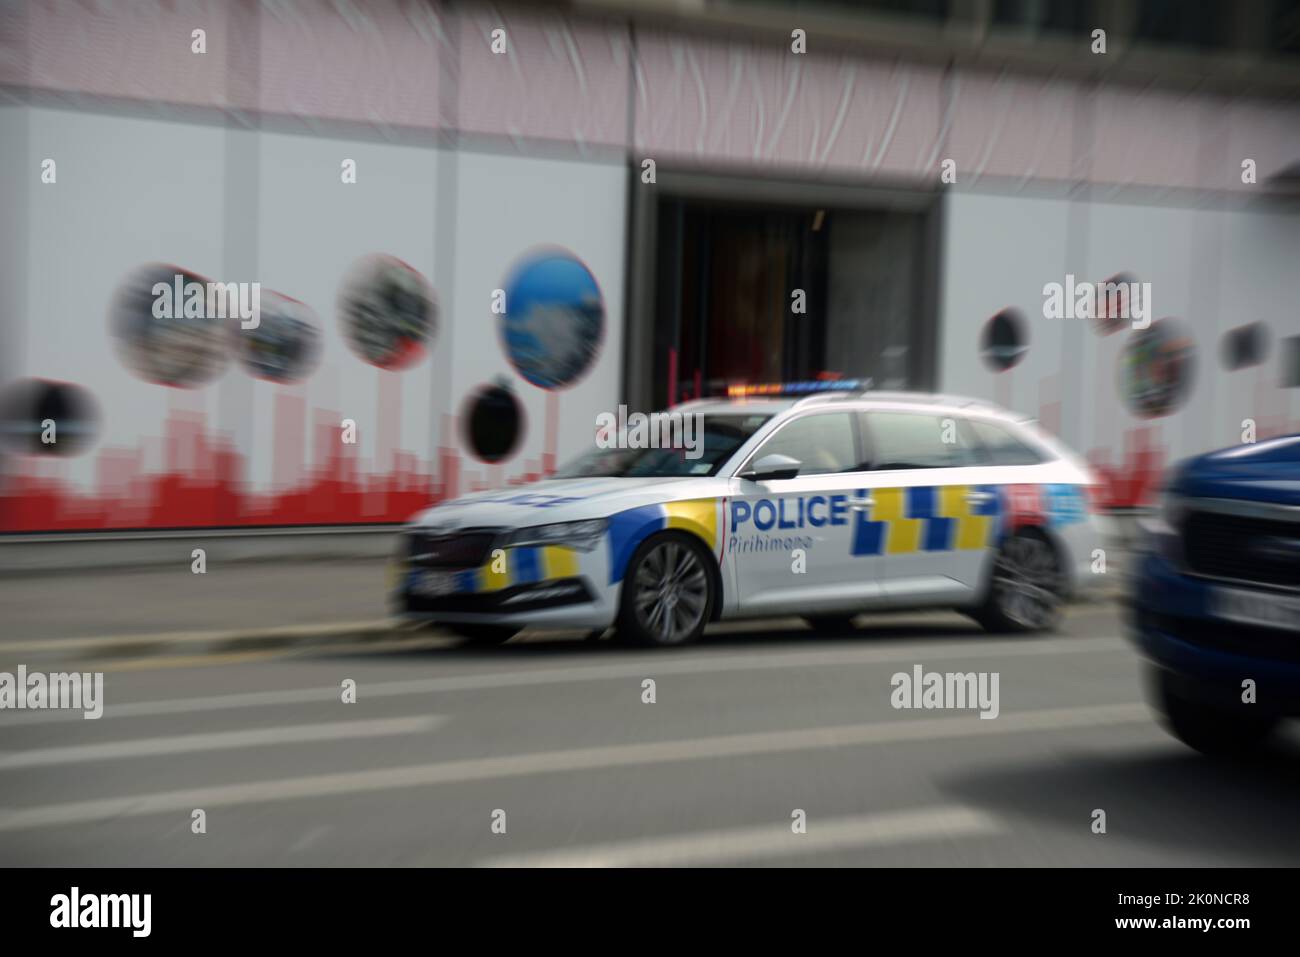 Ein Polizeiauto mit blinkenden Lichtern und Sirenen, die heulen, führt zu einem Notfall in Christchurch, der Quake City von Neuseeland. Das Bild ist radial verzerrt Stockfoto